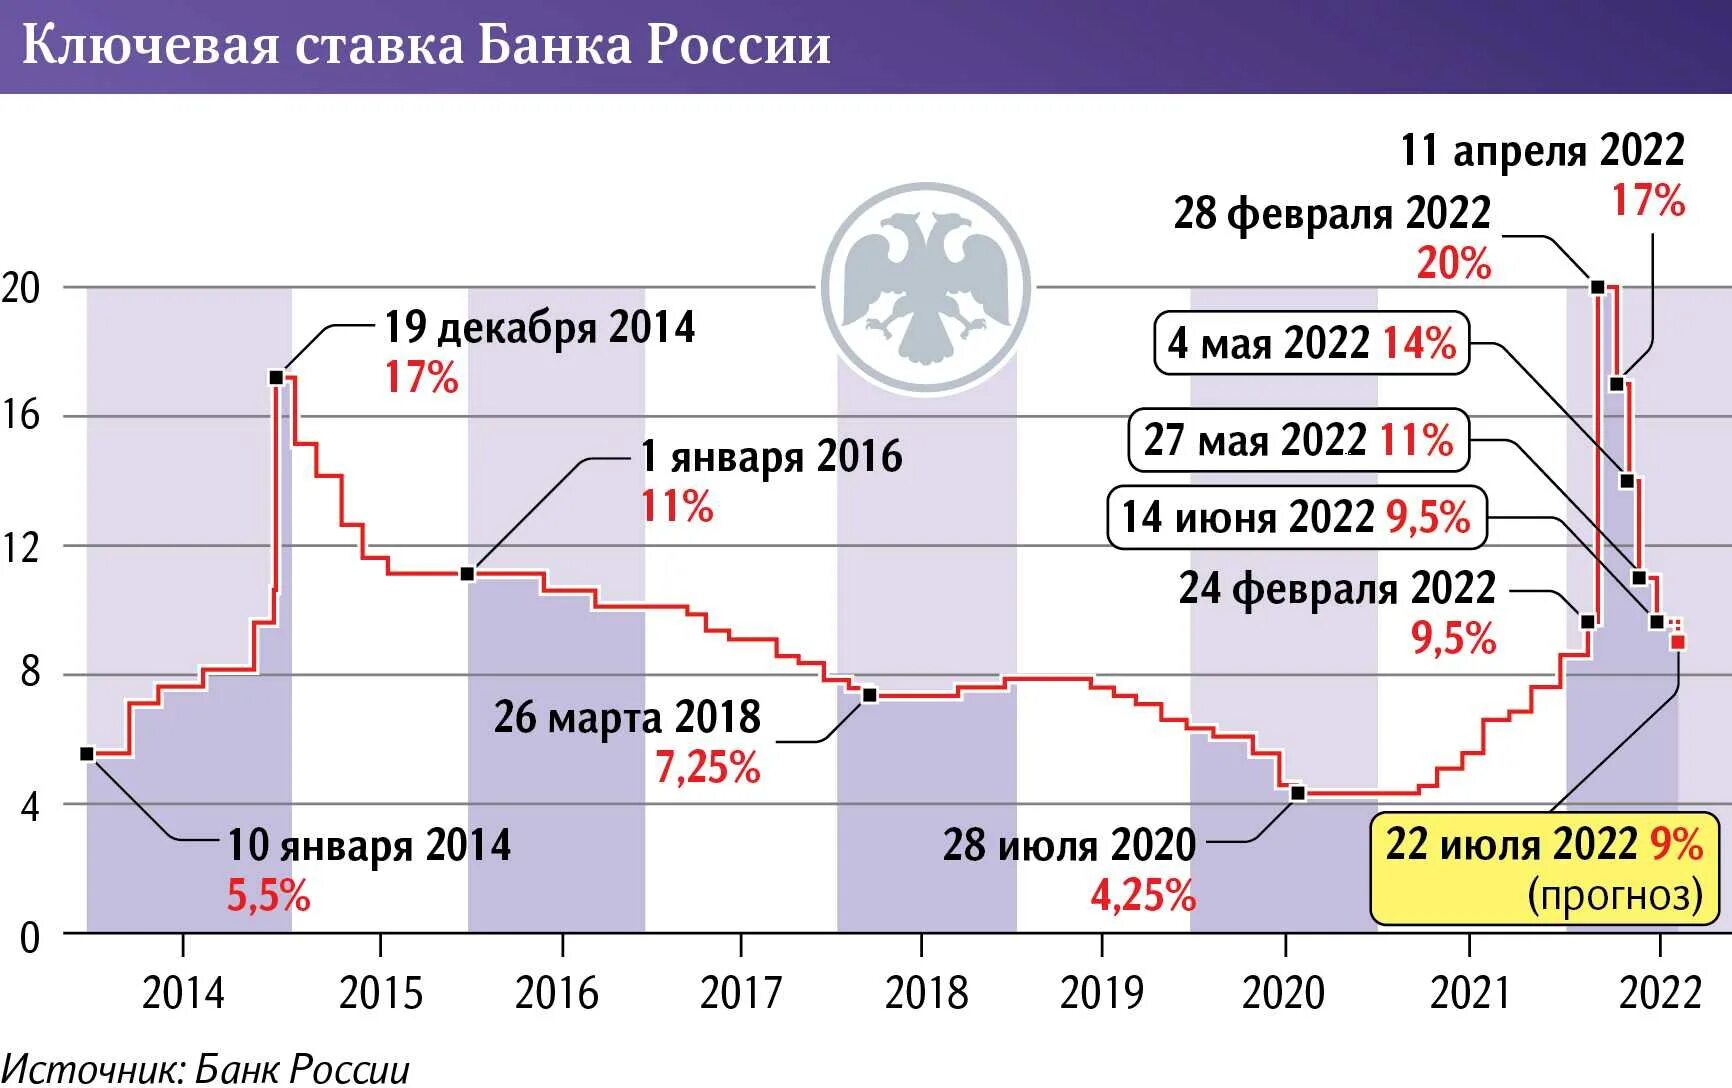 Динамика ключевой ставки РФ 2023. Ключевая ставка. Динамика ключевой ставки в РФ 2023 год. Ключевая ставка динамика.